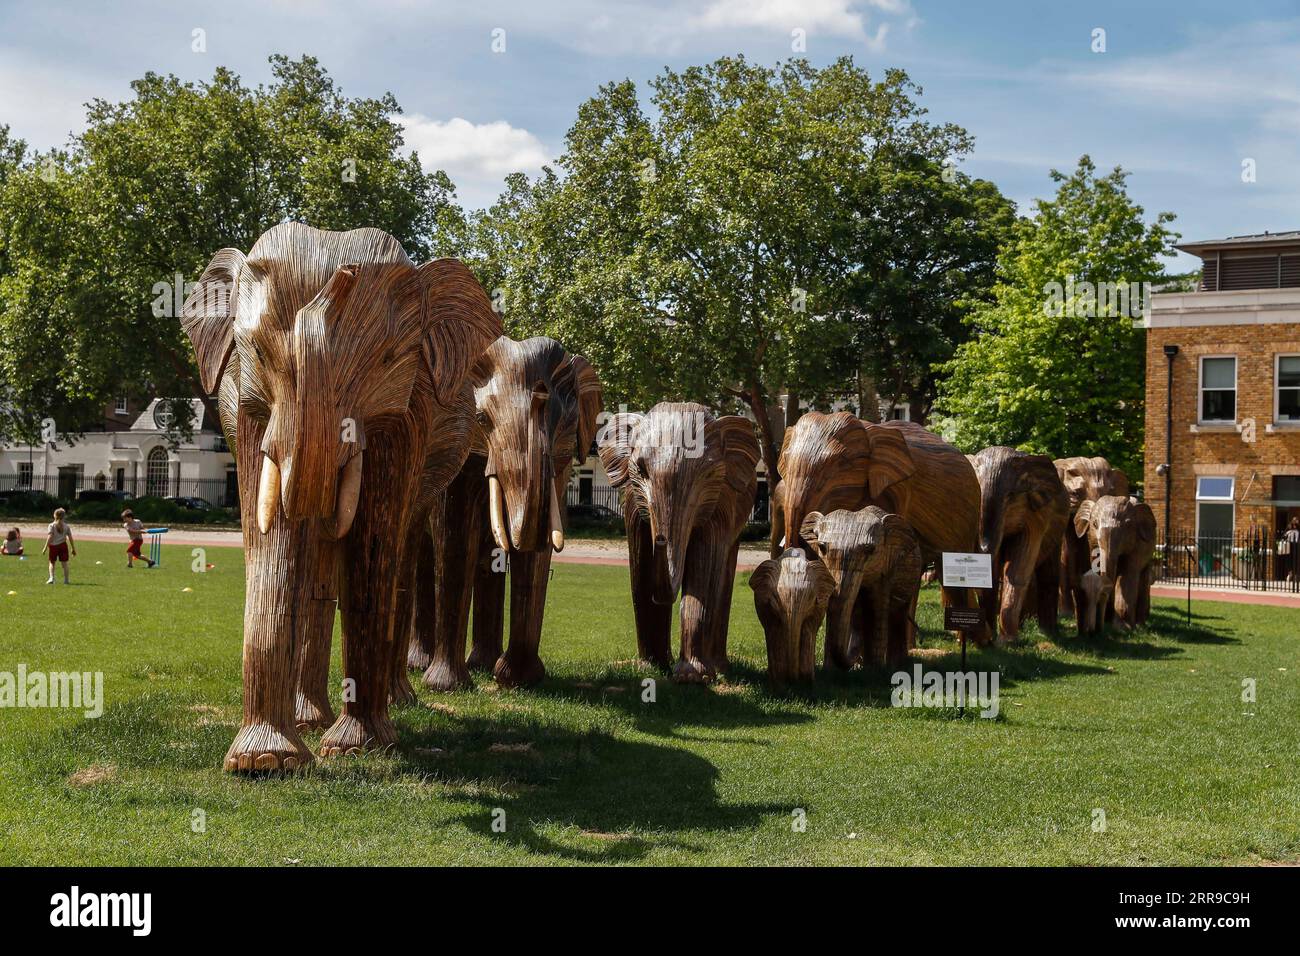 210609 -- LONDRES, 9 de junio de 2021 -- Foto tomada el 8 de junio de 2021 muestra una manada de elefantes artesanales de tamaño natural en Chelsea, Londres, Gran Bretaña. La obra de arte pública de 50 elefantes artesanales de tamaño natural se encuentra en una gira de instalación por el Reino Unido para destacar nuestro atestado planeta, el efecto de la invasión humana en los espacios salvajes y las inspiradoras formas en que podemos coexistir con todos los demás seres vivos. GRAN BRETAÑA-LONDRES-ESCULTURA-ELEFANTES-CONVIVENCIA HanxYan PUBLICATIONxNOTxINxCHN Foto de stock